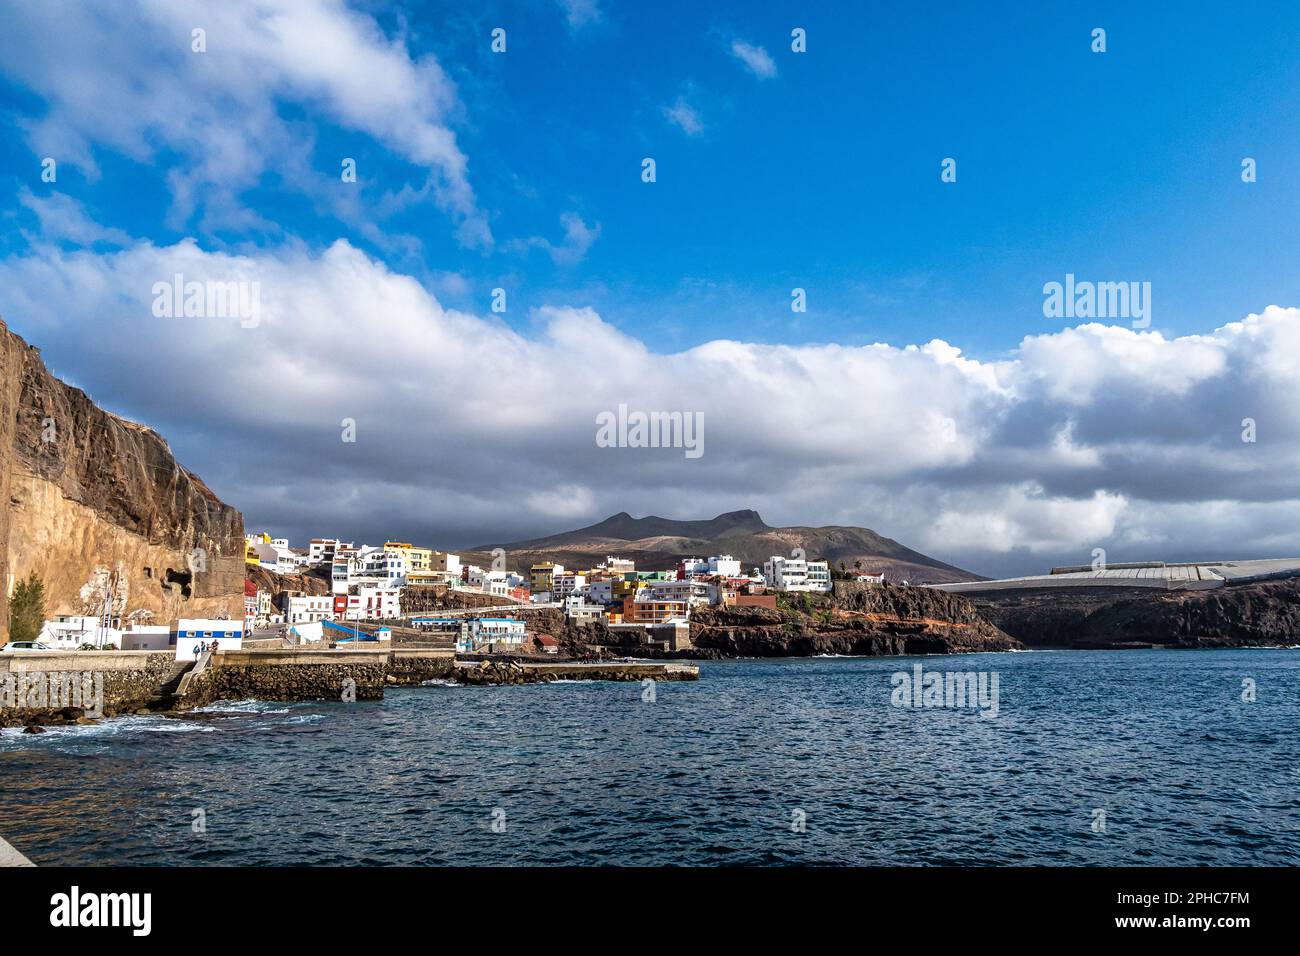 Sardina del Norte, ville côtière de Gran Canaria, îles Canaries, Espagne. Petit village de pêcheurs avec maisons colorées Banque D'Images